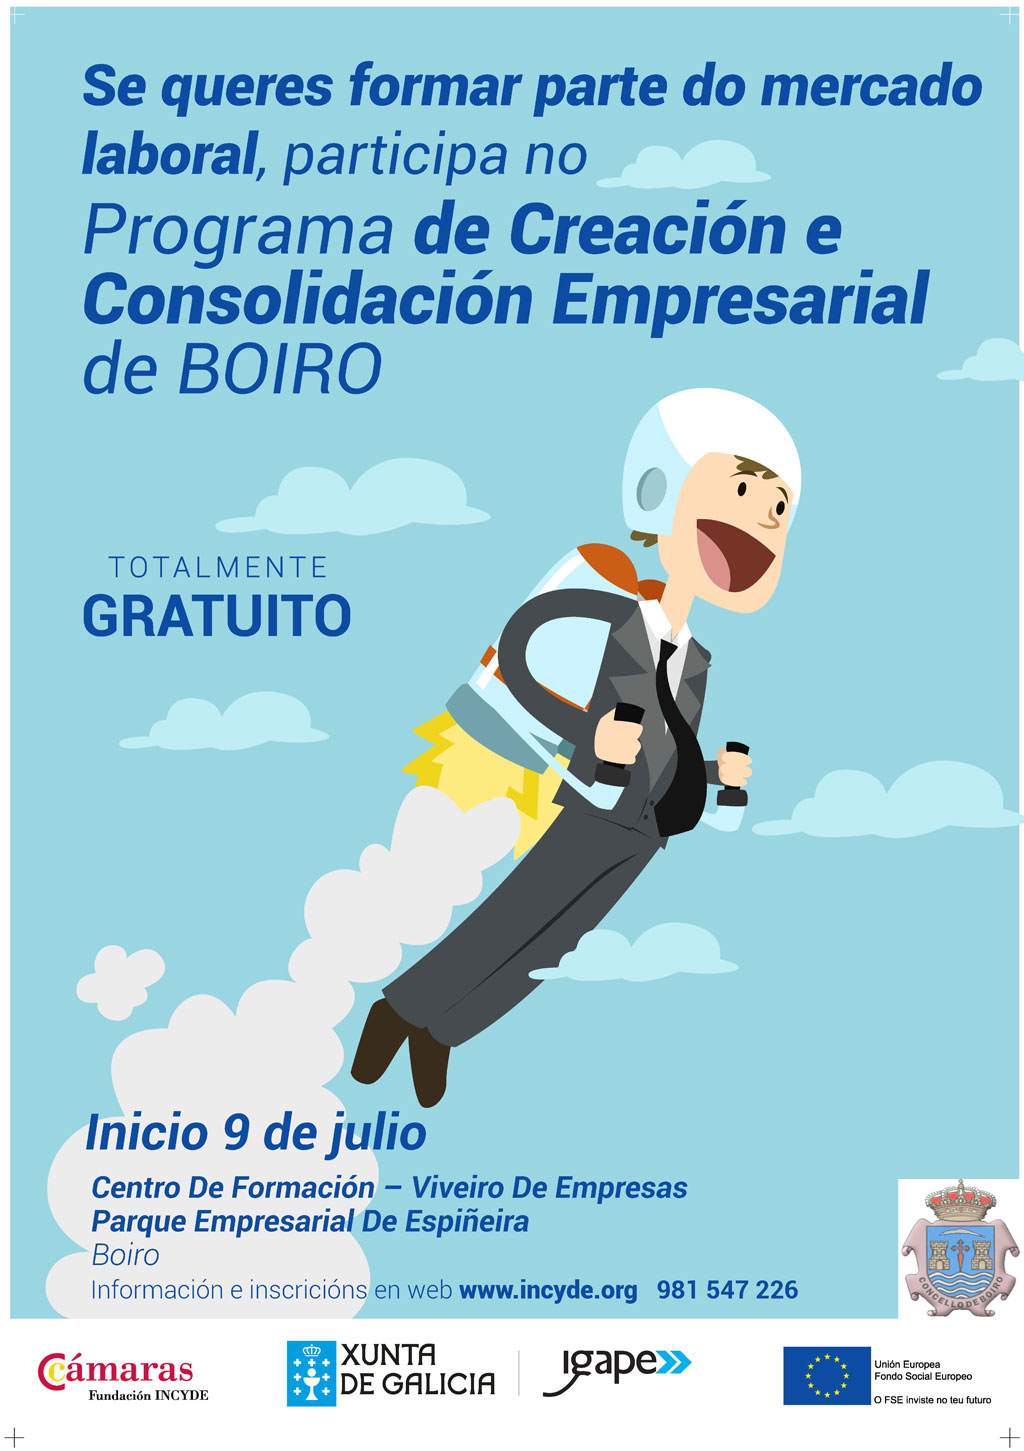 Programa de Creación e Consolidación Empresarial de Boiro